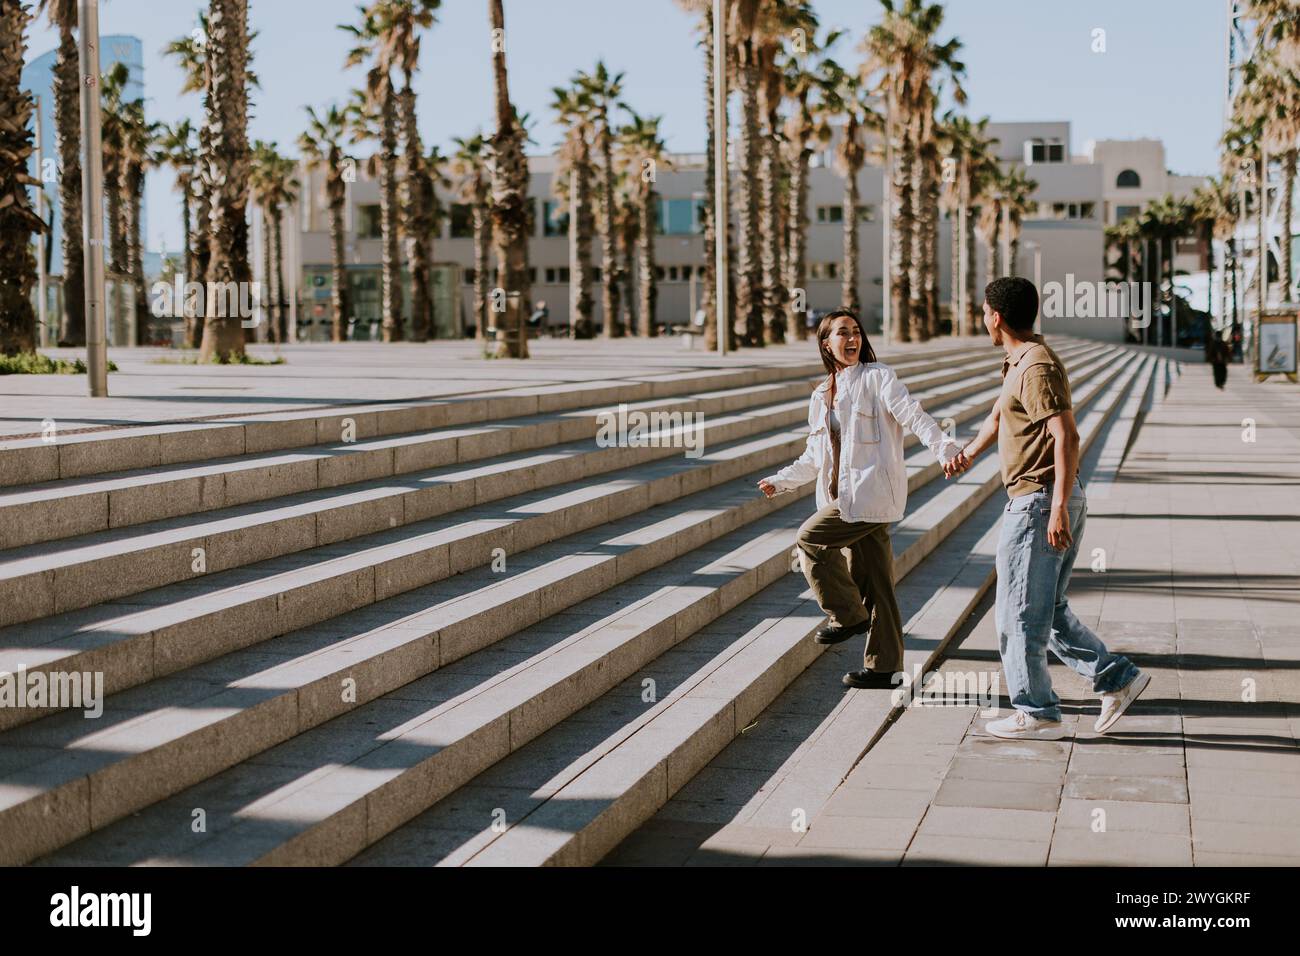 Les jeunes couples se réunissent joyeusement sur les marches d'une promenade bordée de palmiers dans le paysage urbain animé de Barcelonas Banque D'Images